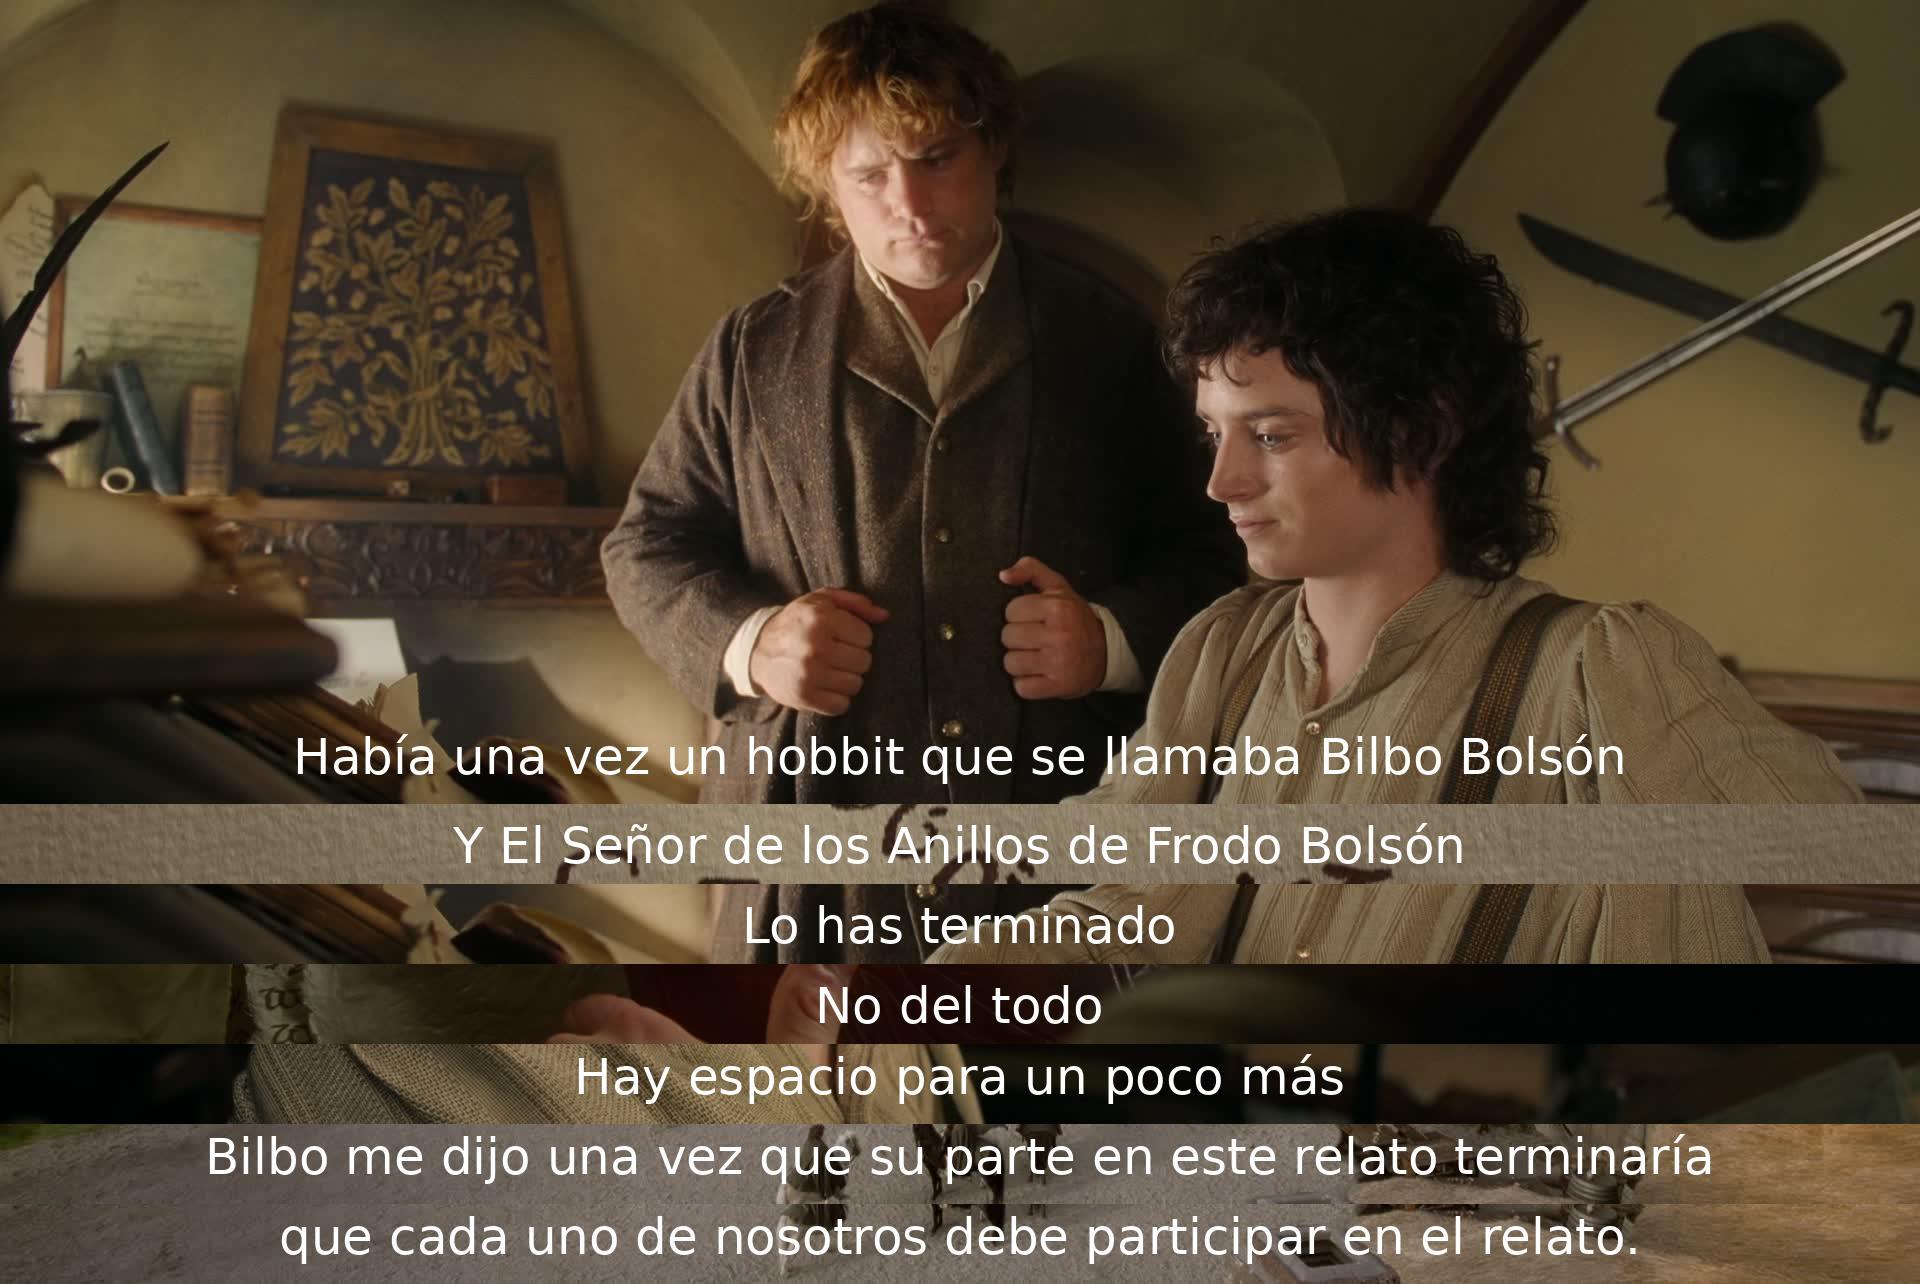 Un hobbit llamado Bilbo y Frodo Bolsón hablan sobre su papel en la historia. Bilbo revela que cada uno debe participar en el relato, sugiriendo que aún hay más por venir.